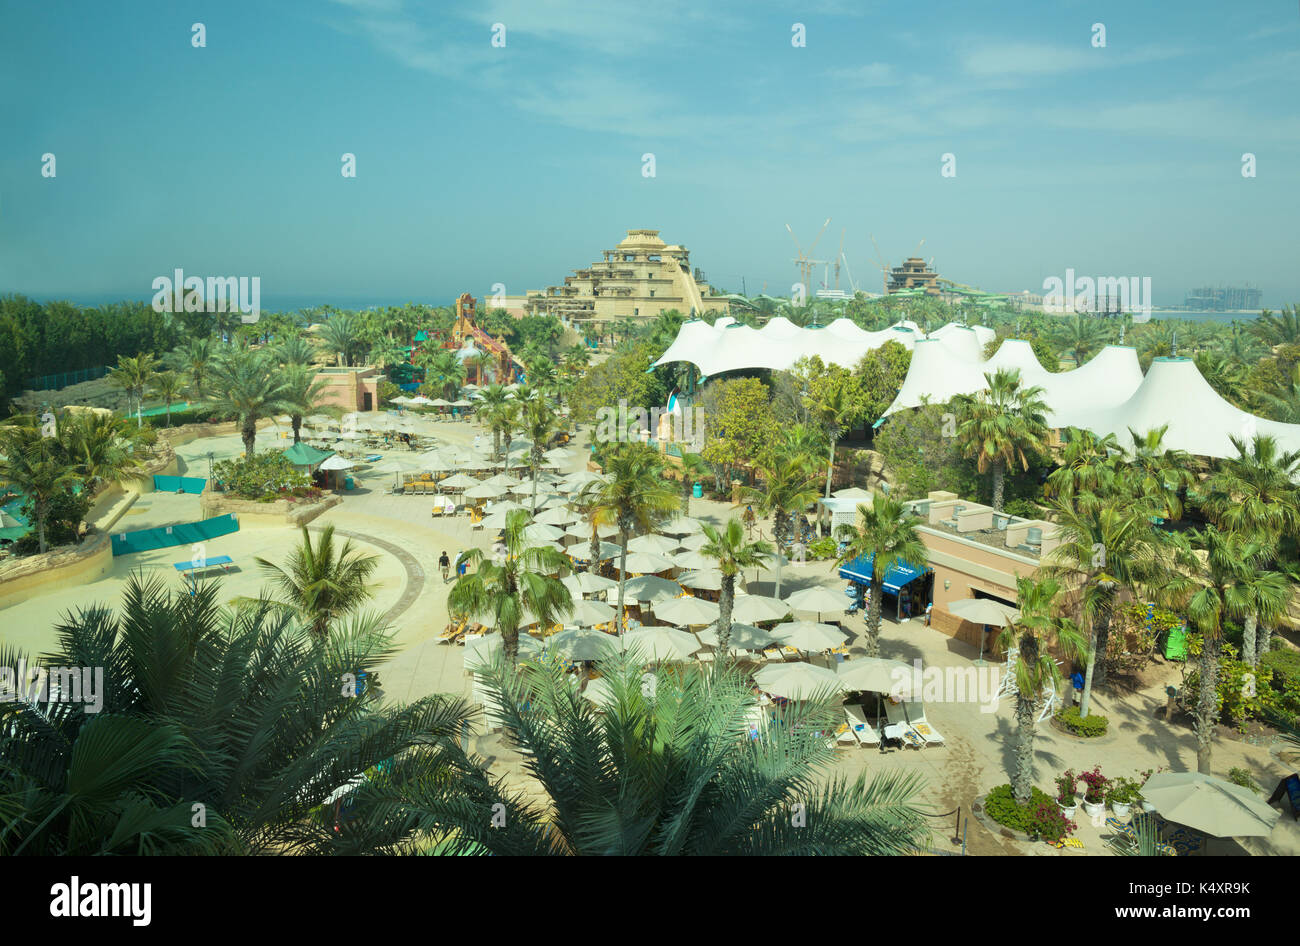 Dubai, Emirati Arabi Uniti - 23 marzo 2017: tha waterpark sul palm island Foto Stock